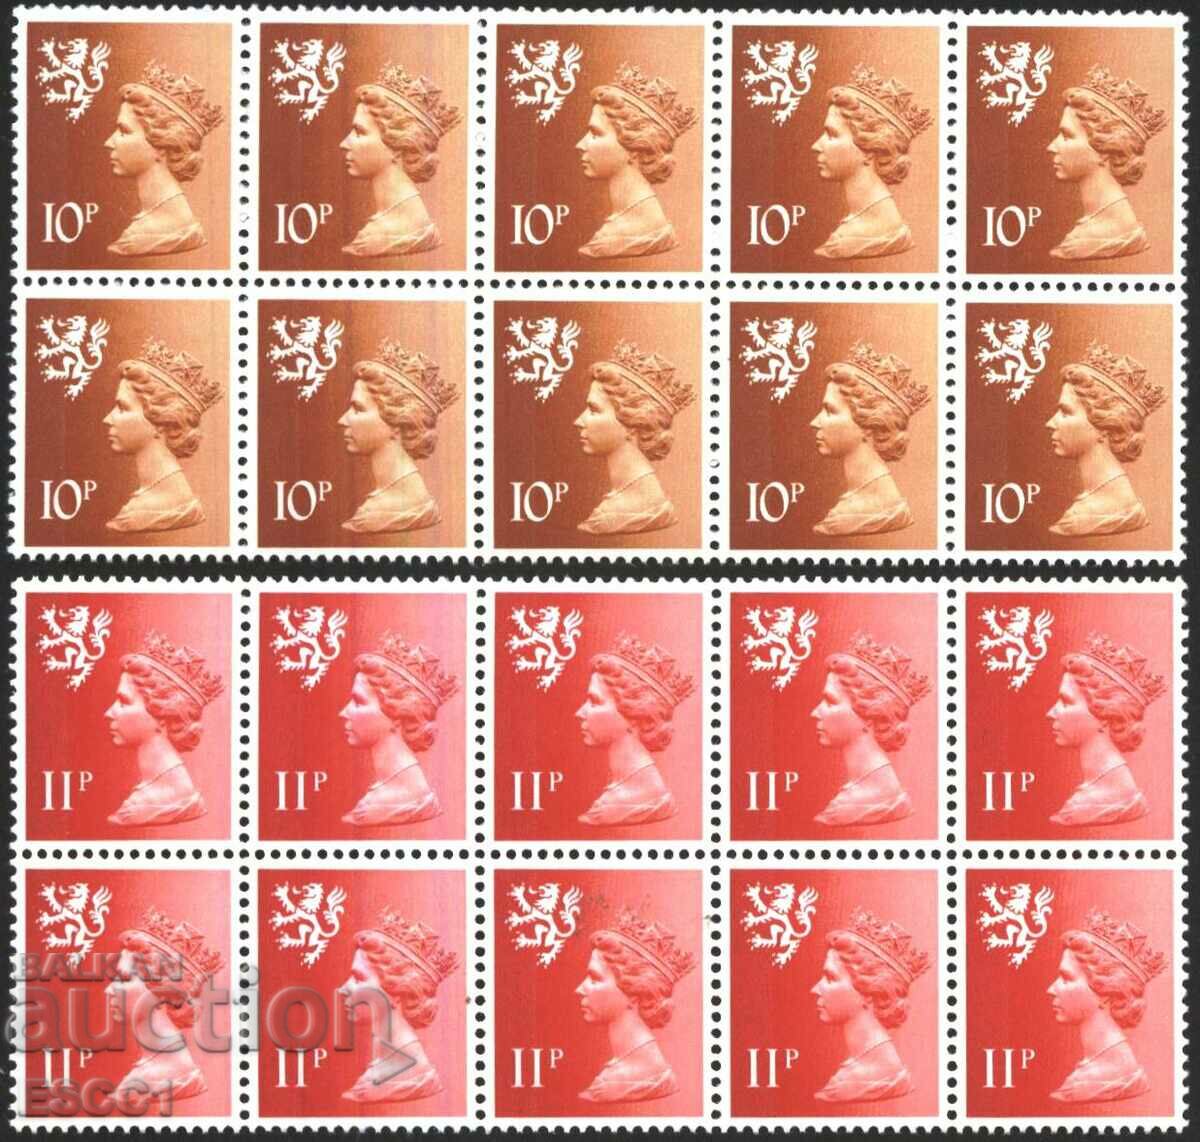 Clean stamps Queen Elizabeth II 1976 of Scotland